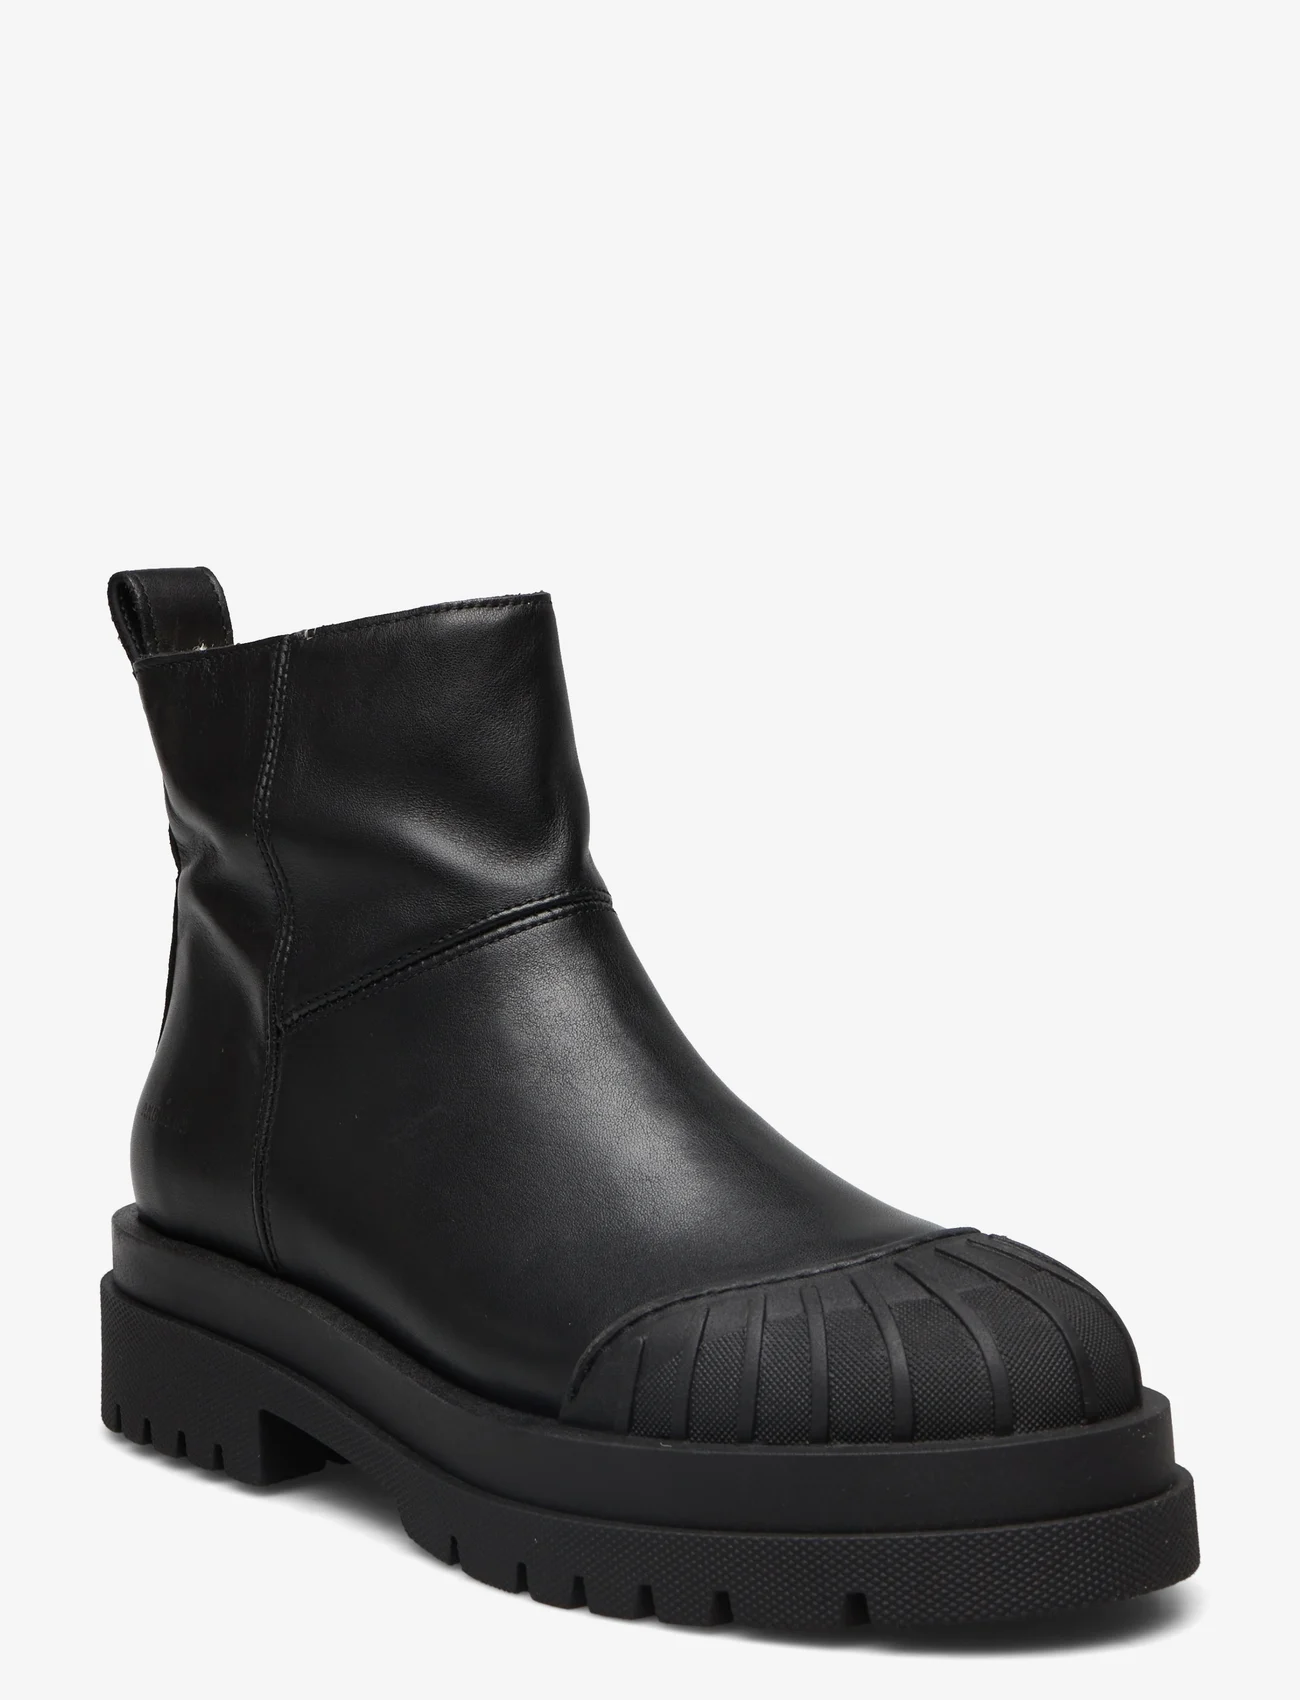 ANGULUS - Boots - flat - women - 1604 black - 0